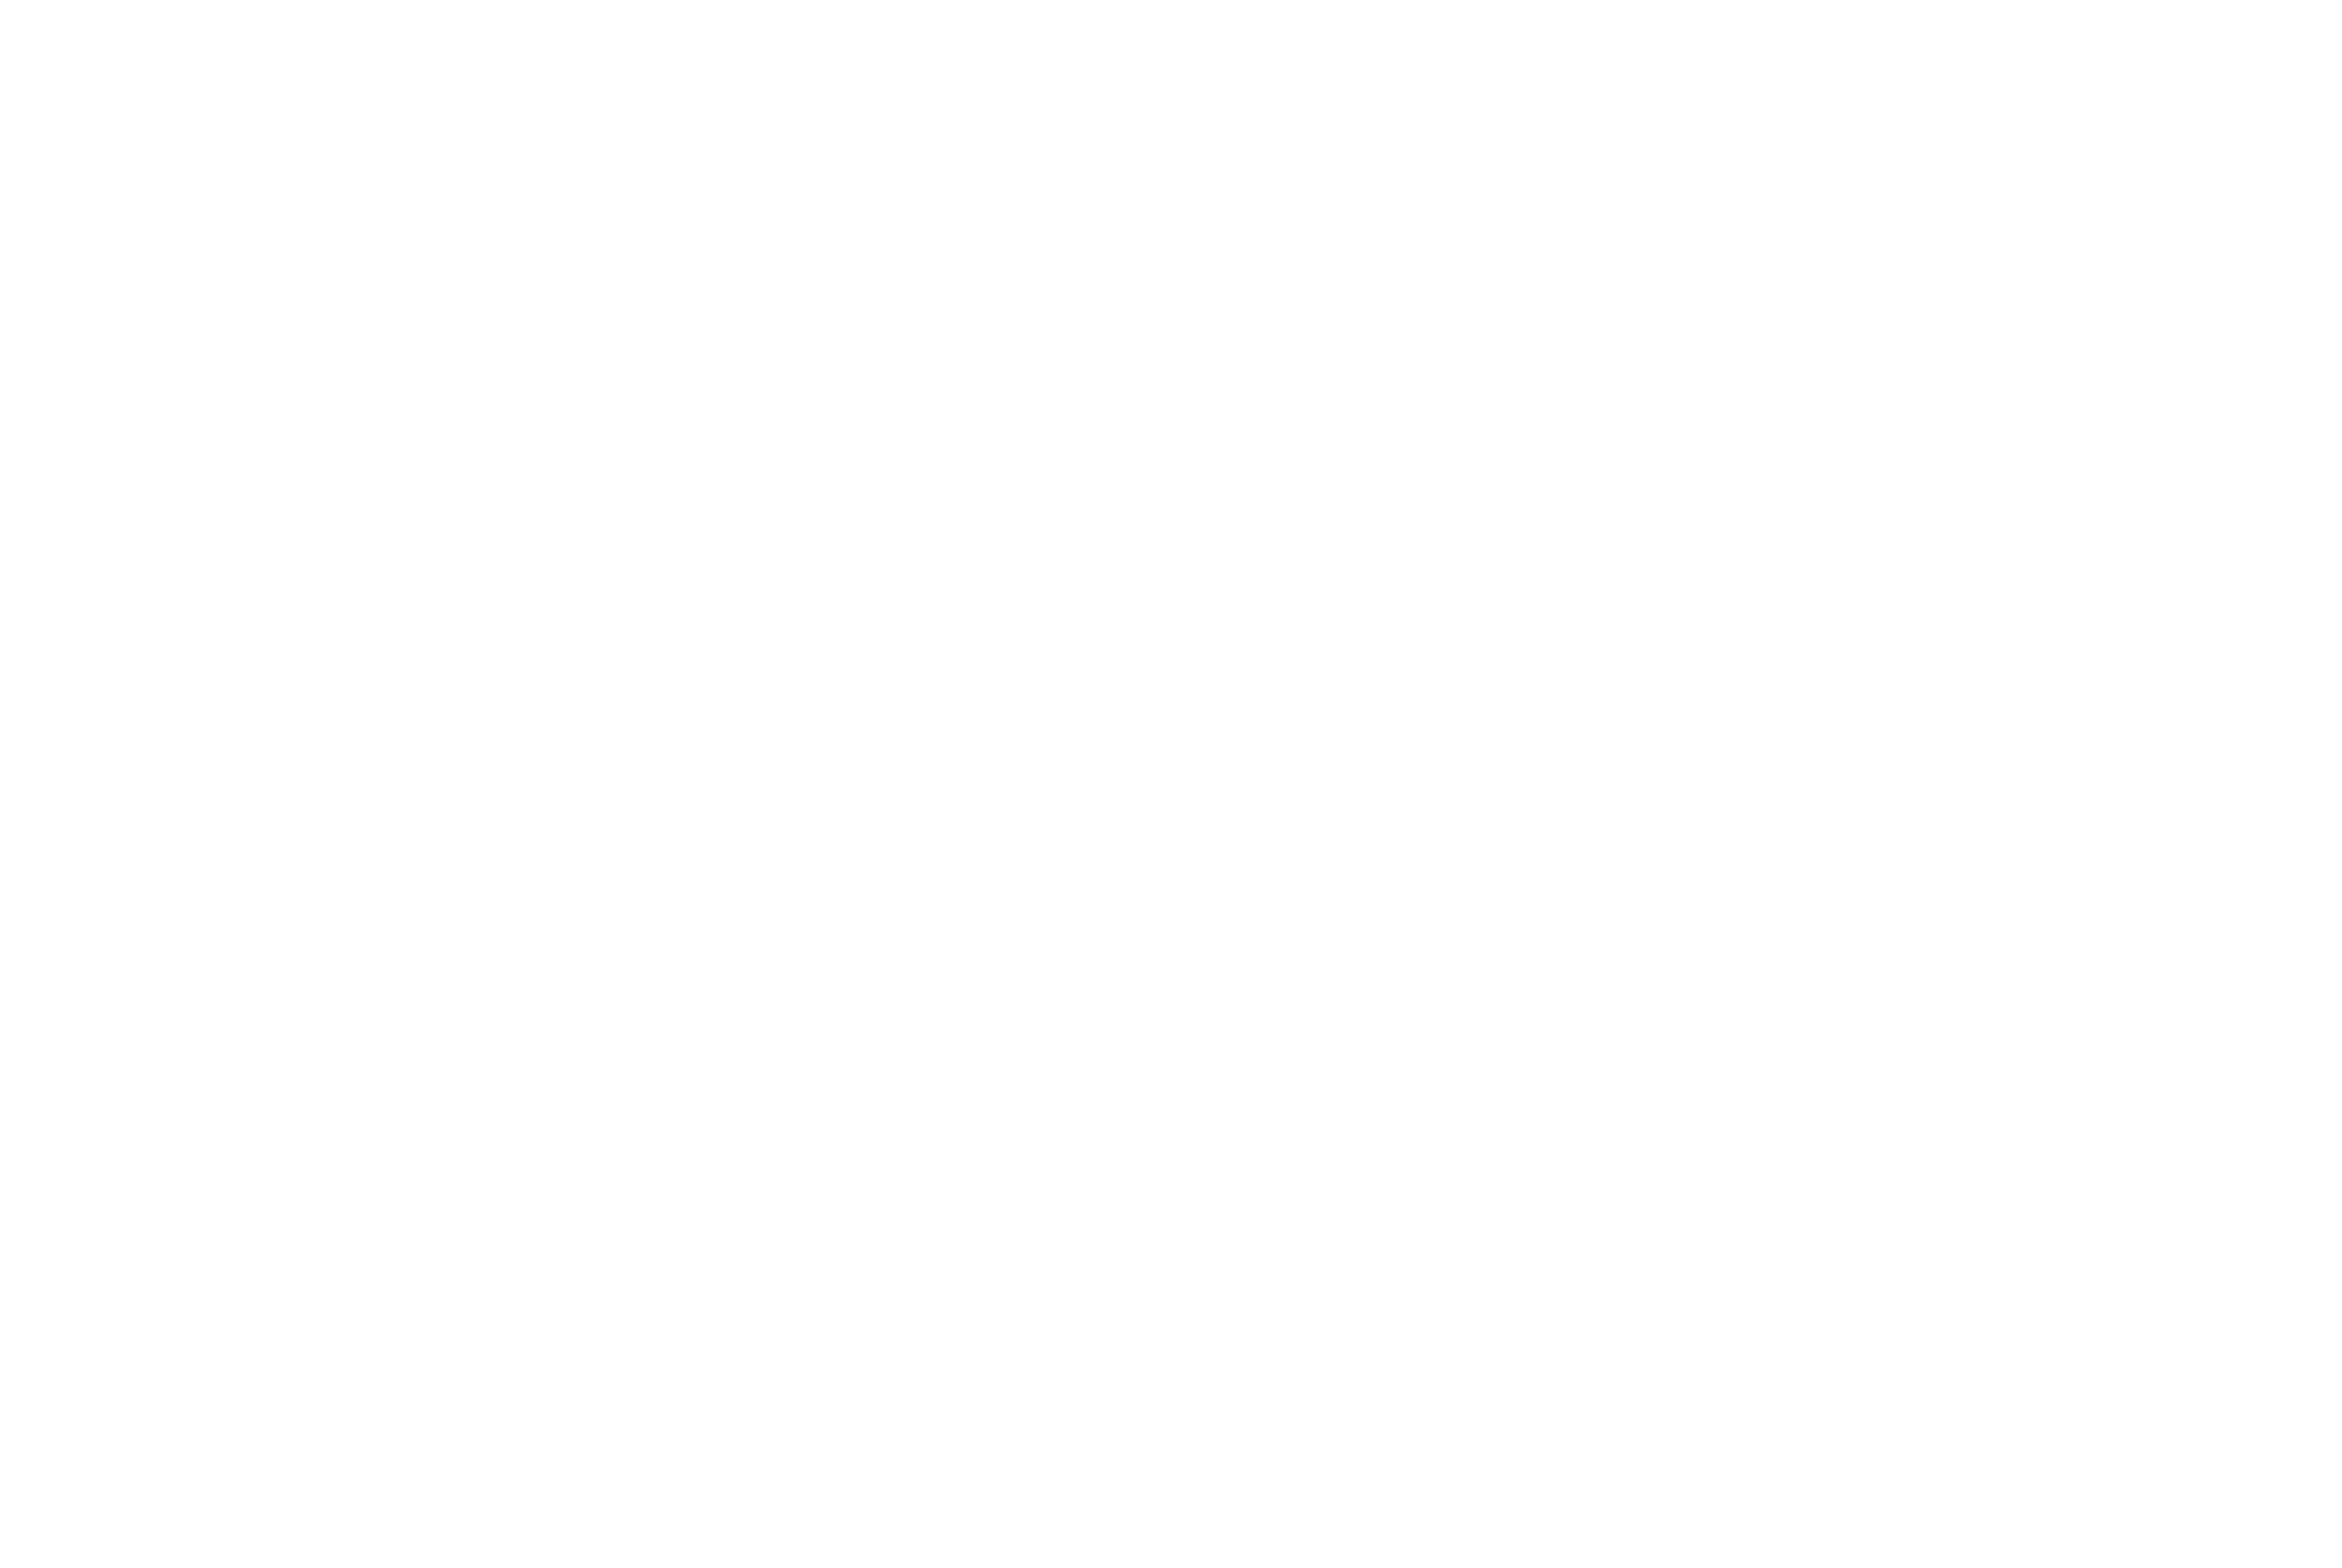 Rob Melone